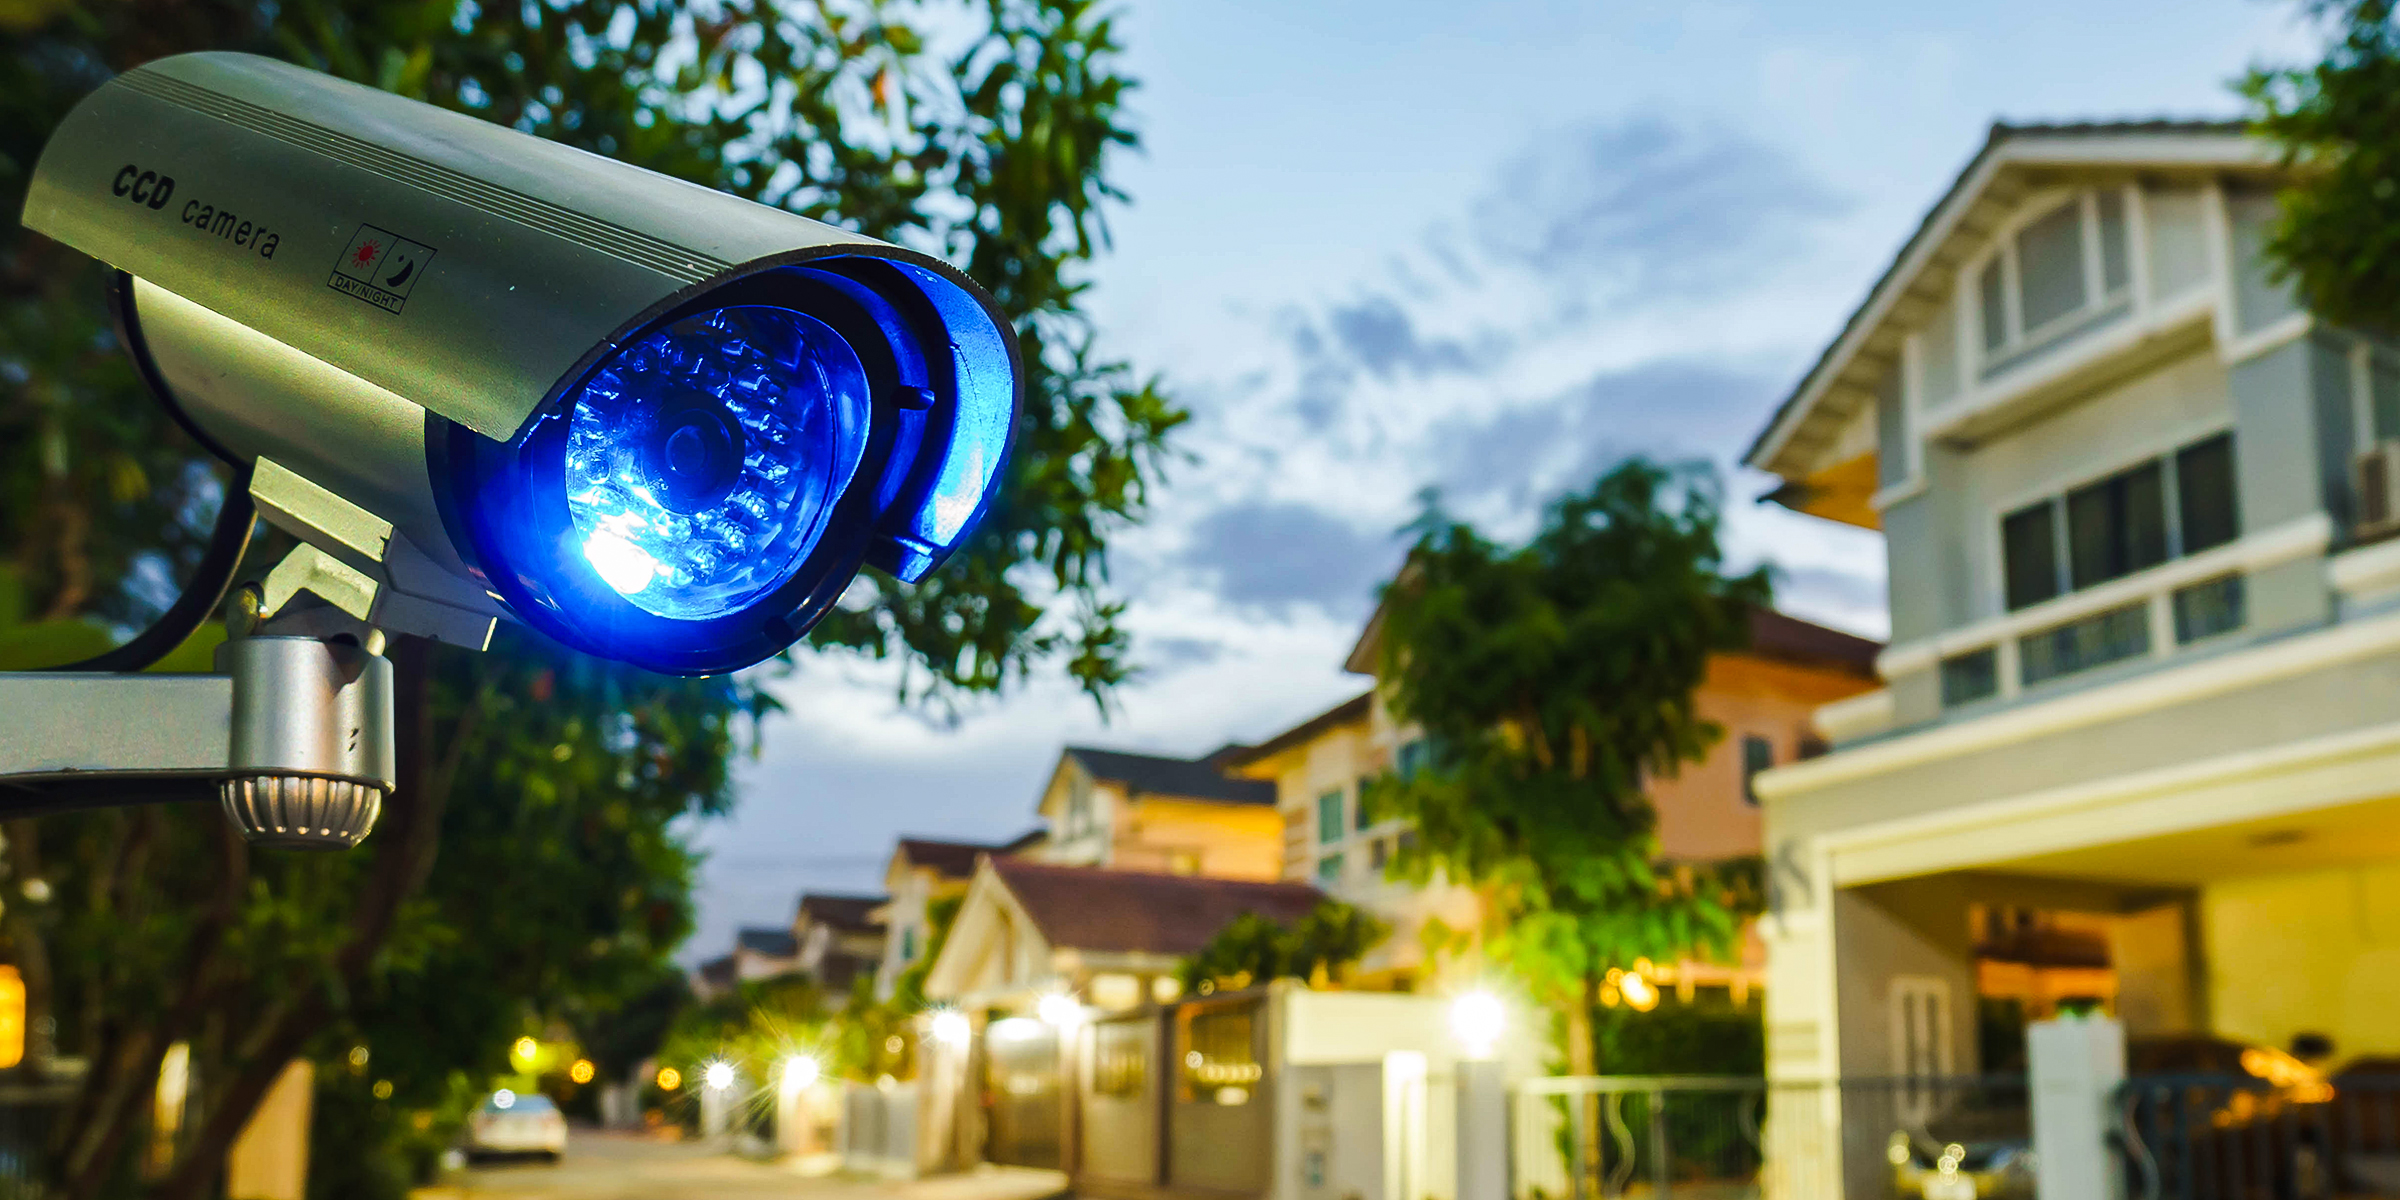 Una cámara de seguridad en un vecindario | Fuente: Shutterstock